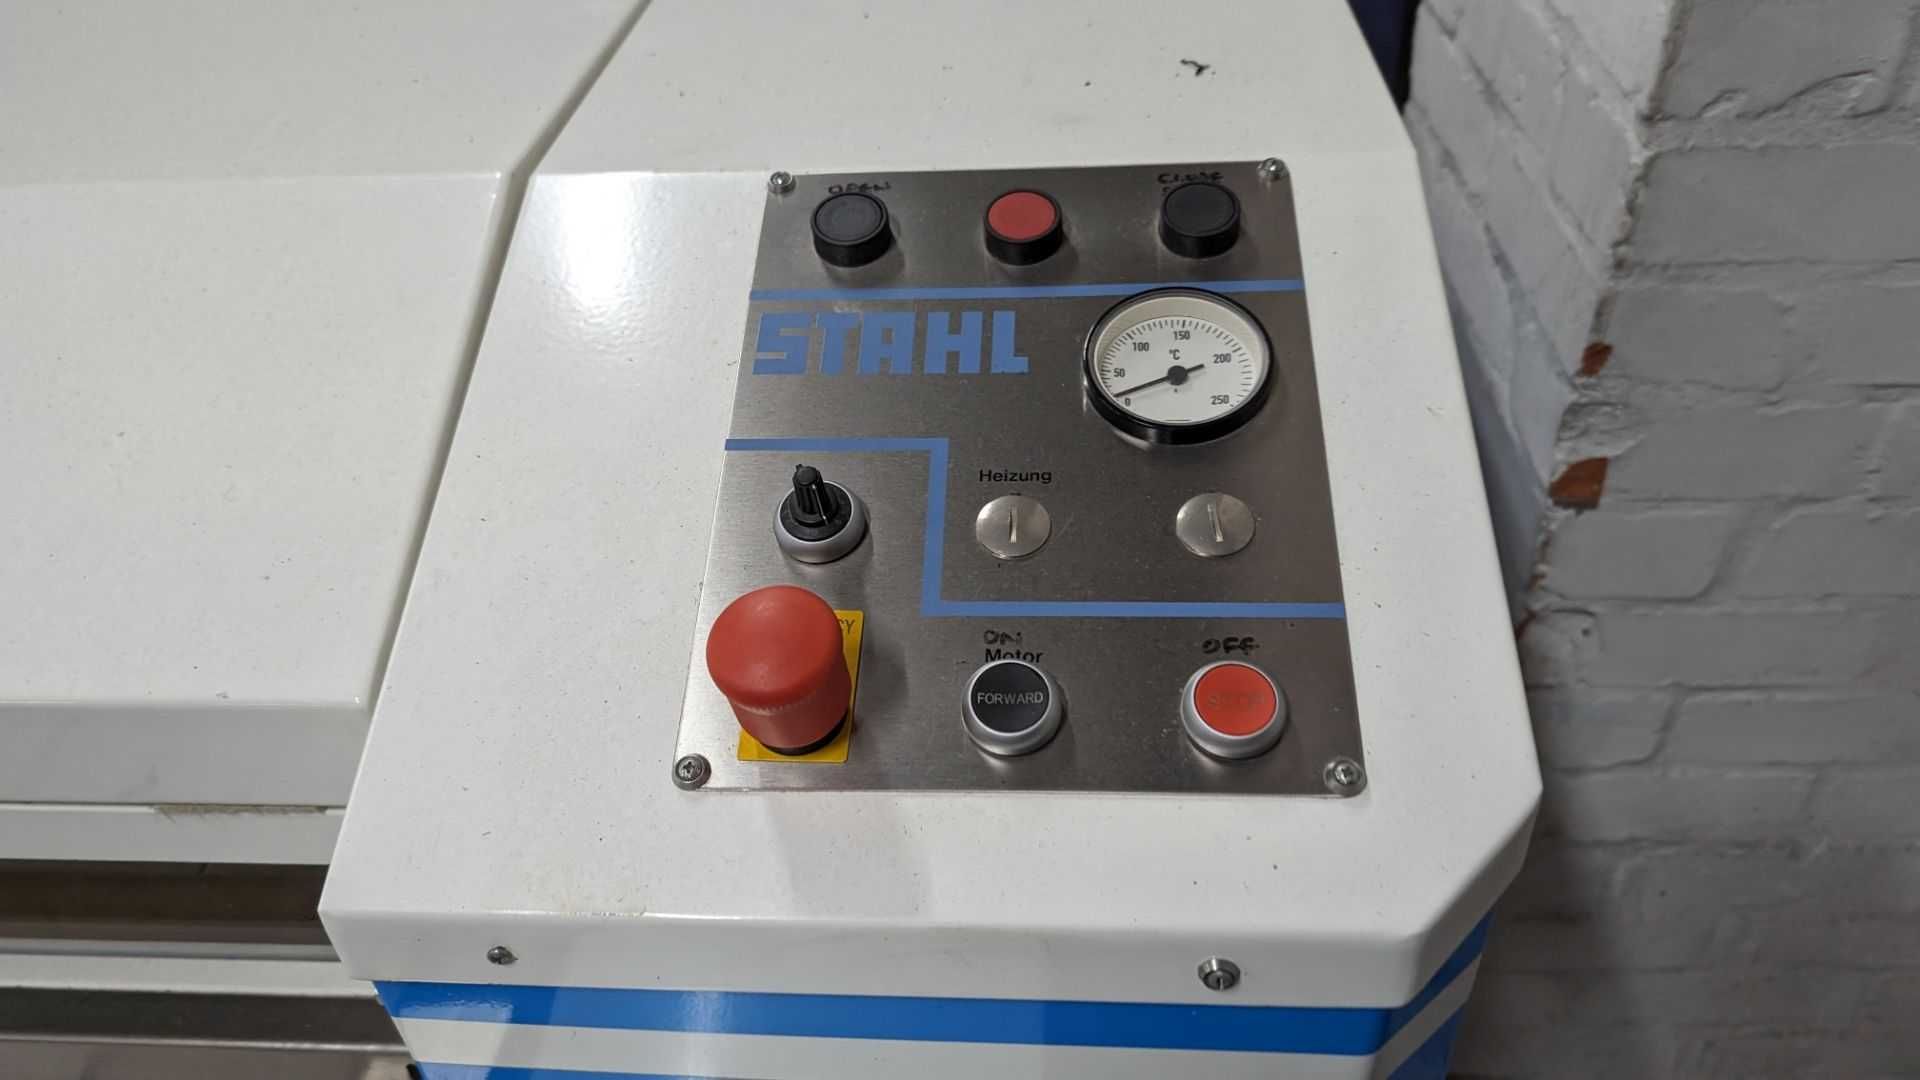 Magiel nieckowy Stahl 3000/600 - Pralnia Maszyny Pralnicze